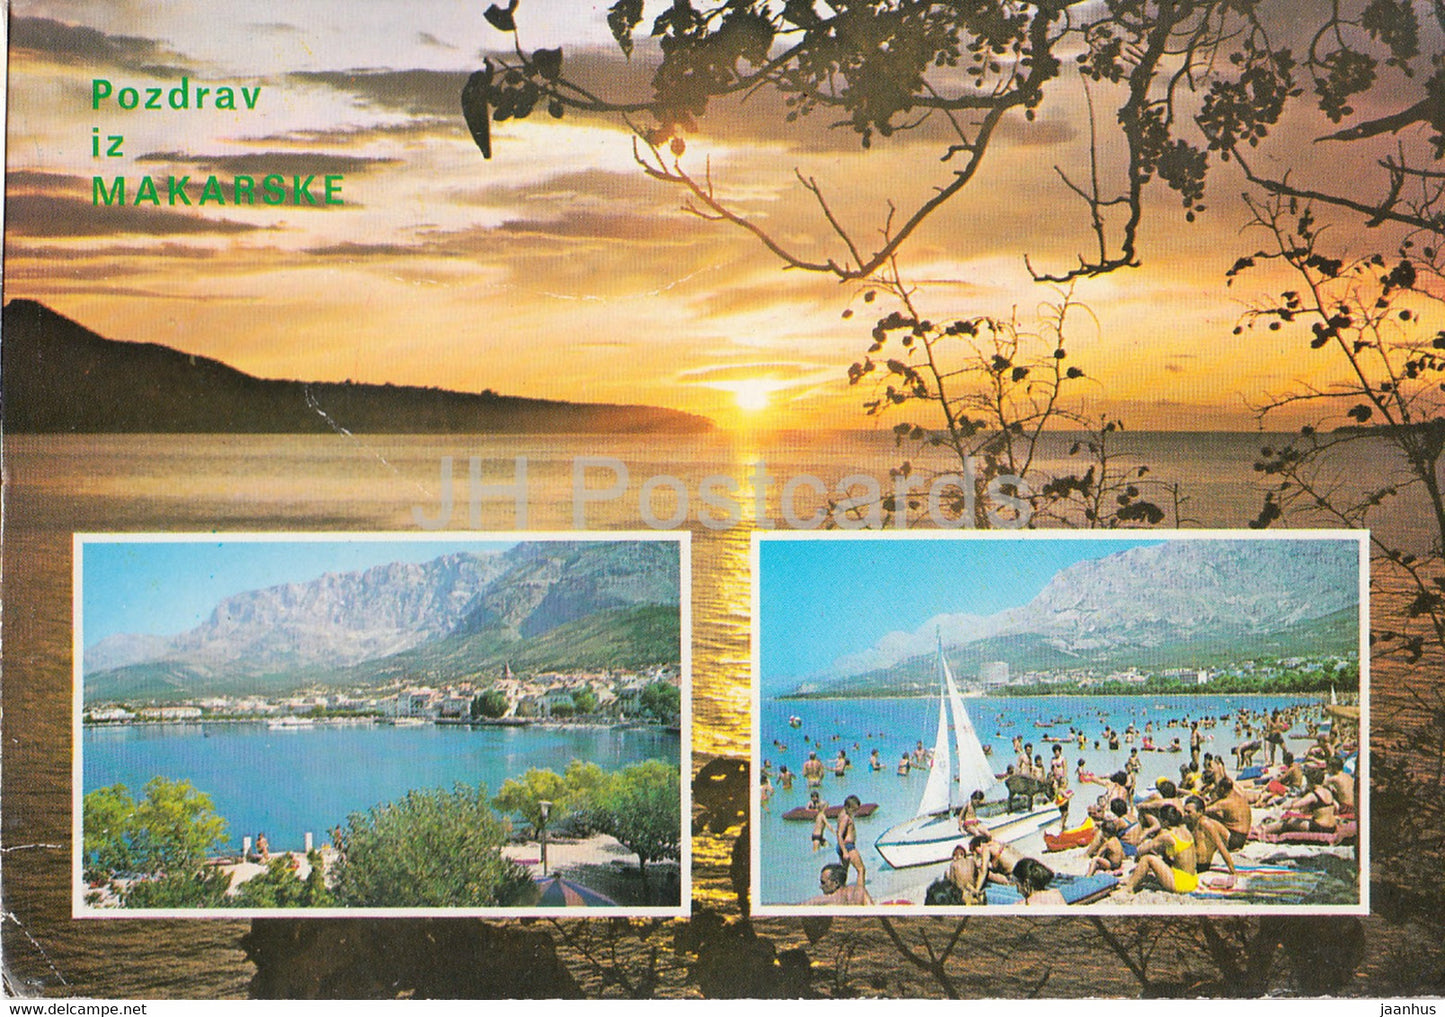 Pozdrav iz Makarske - Makarska - beach - multiview - 1983 - Yugoslavia - Croatia - used - JH Postcards